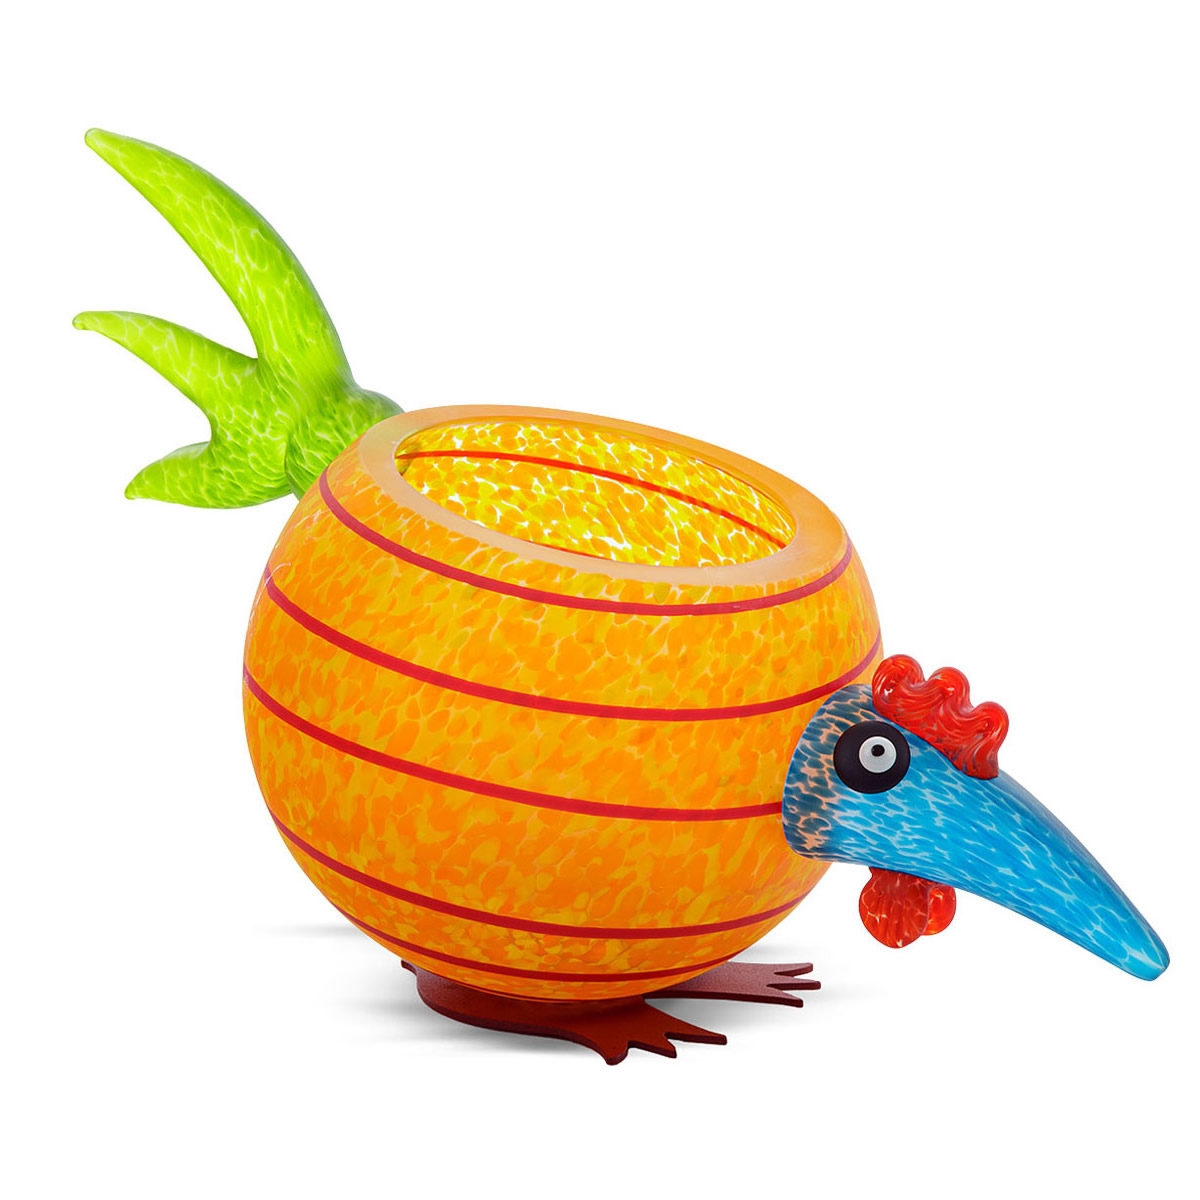 Pick Chick Chicken Bowl Glass Sculpture Orange